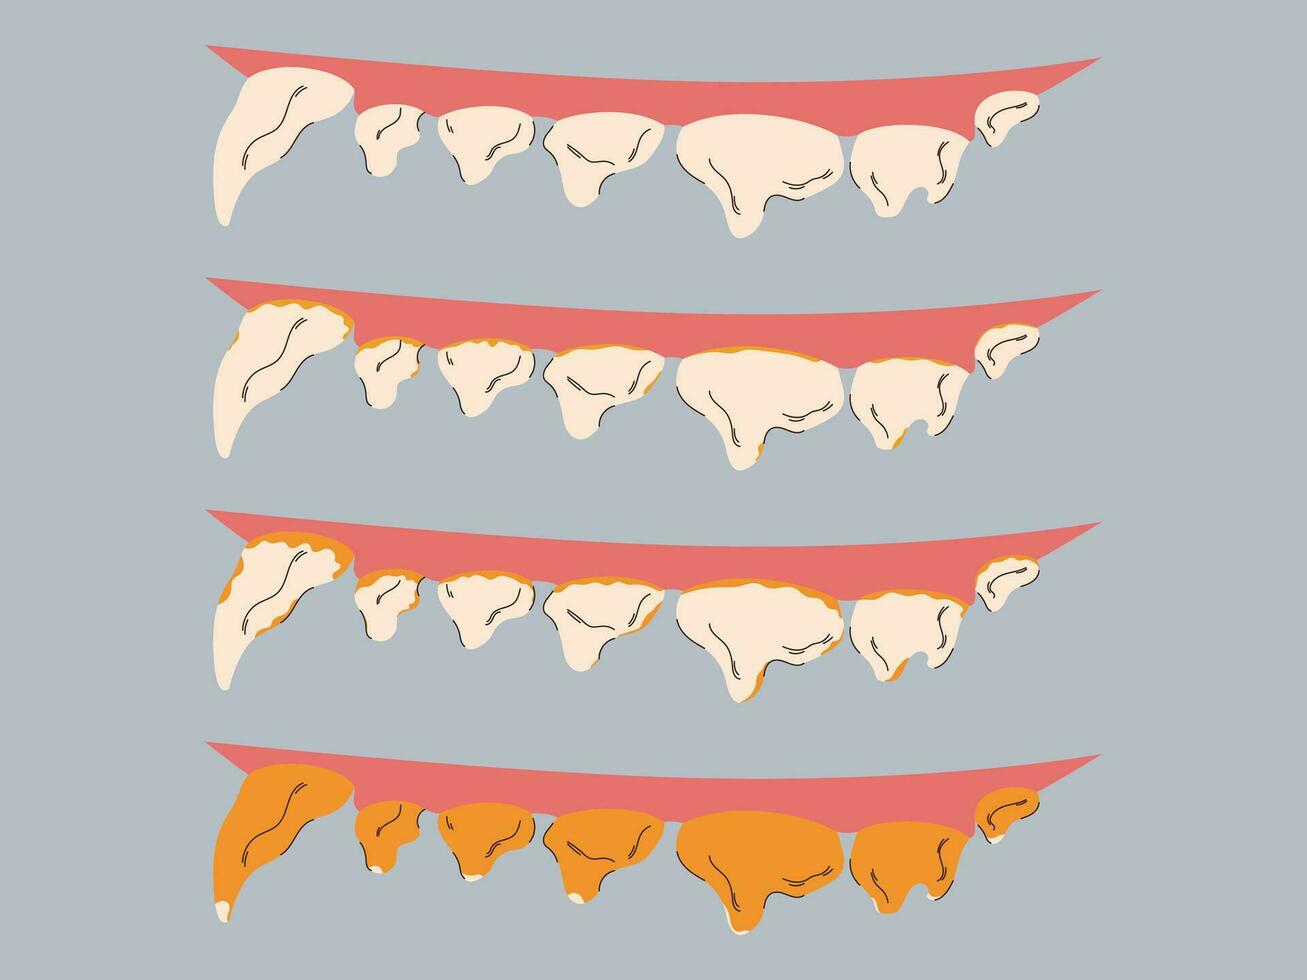 étapes de plaque et tartre formation dans chiens. gencive maladie la prévention. chien dentaire se soucier concept. vecteur illustration